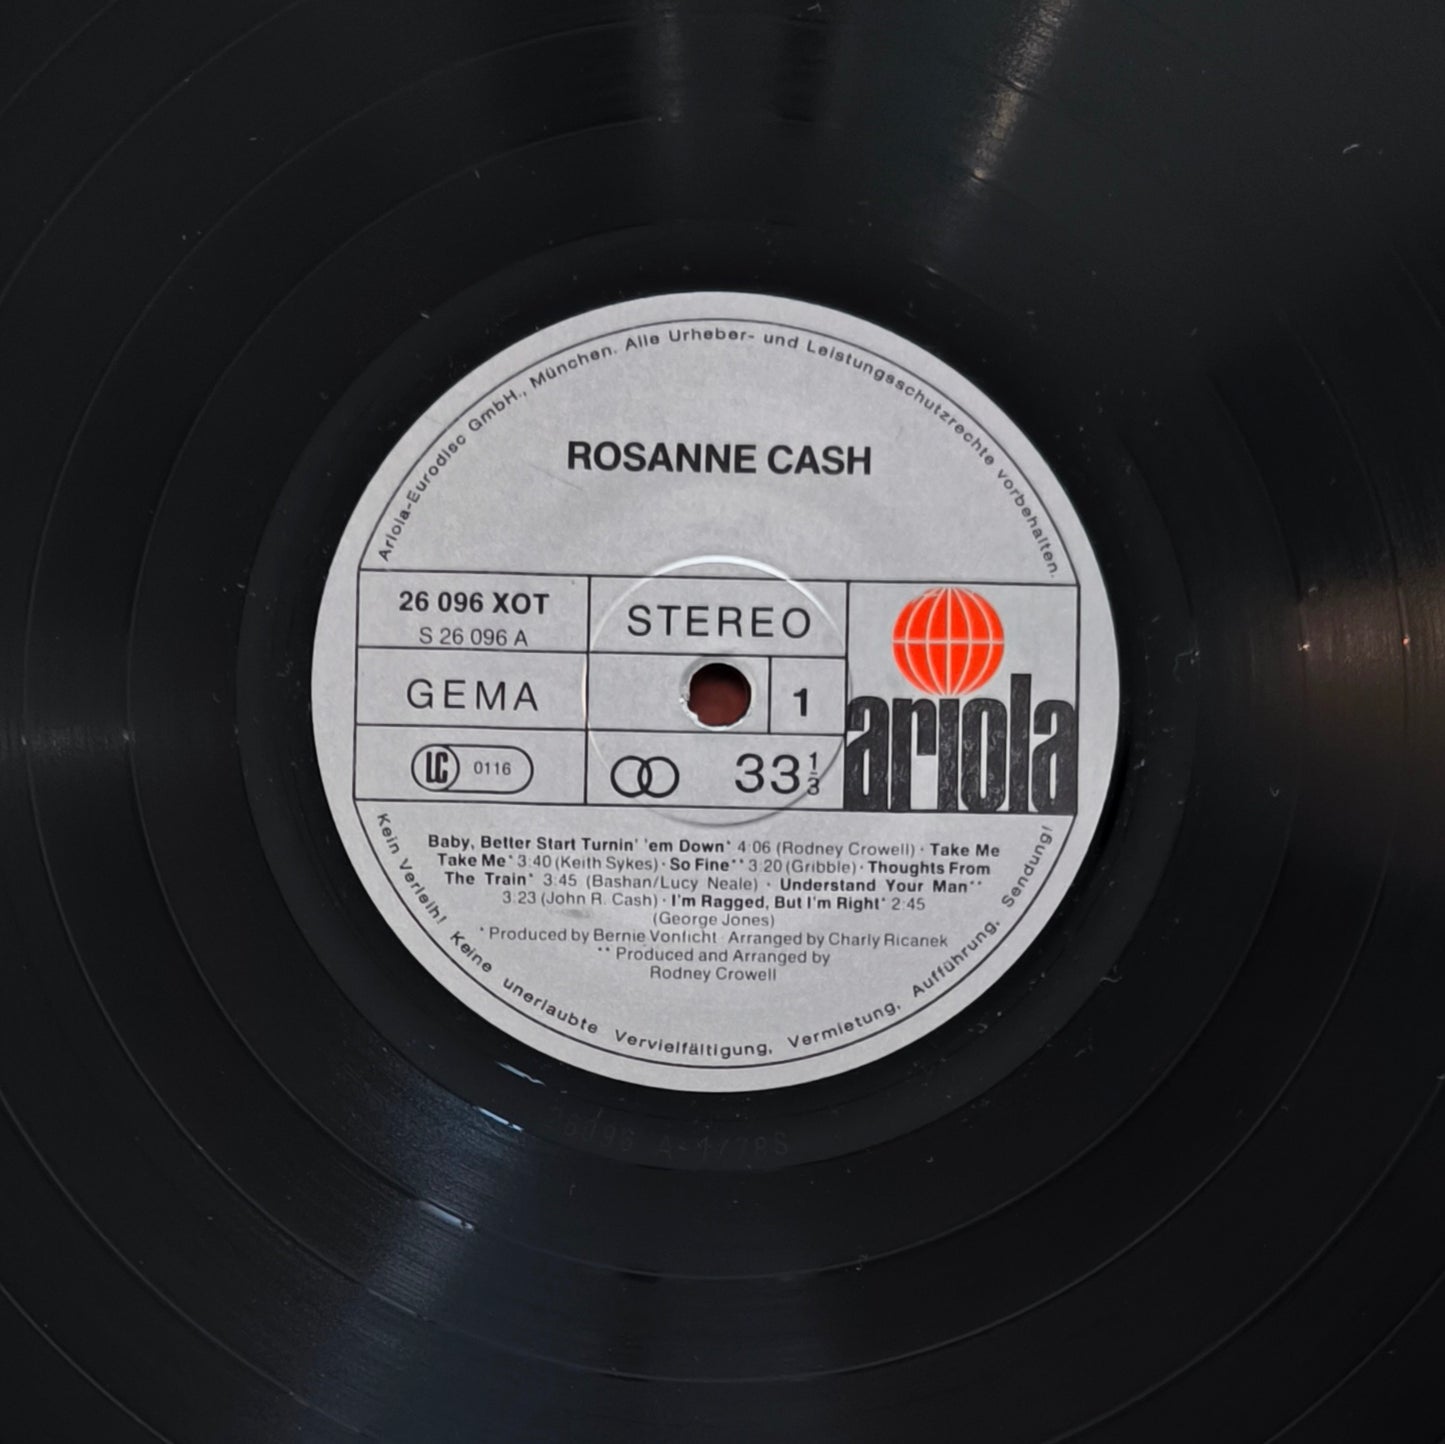 ROSANNE CASH - Rosanne Cash